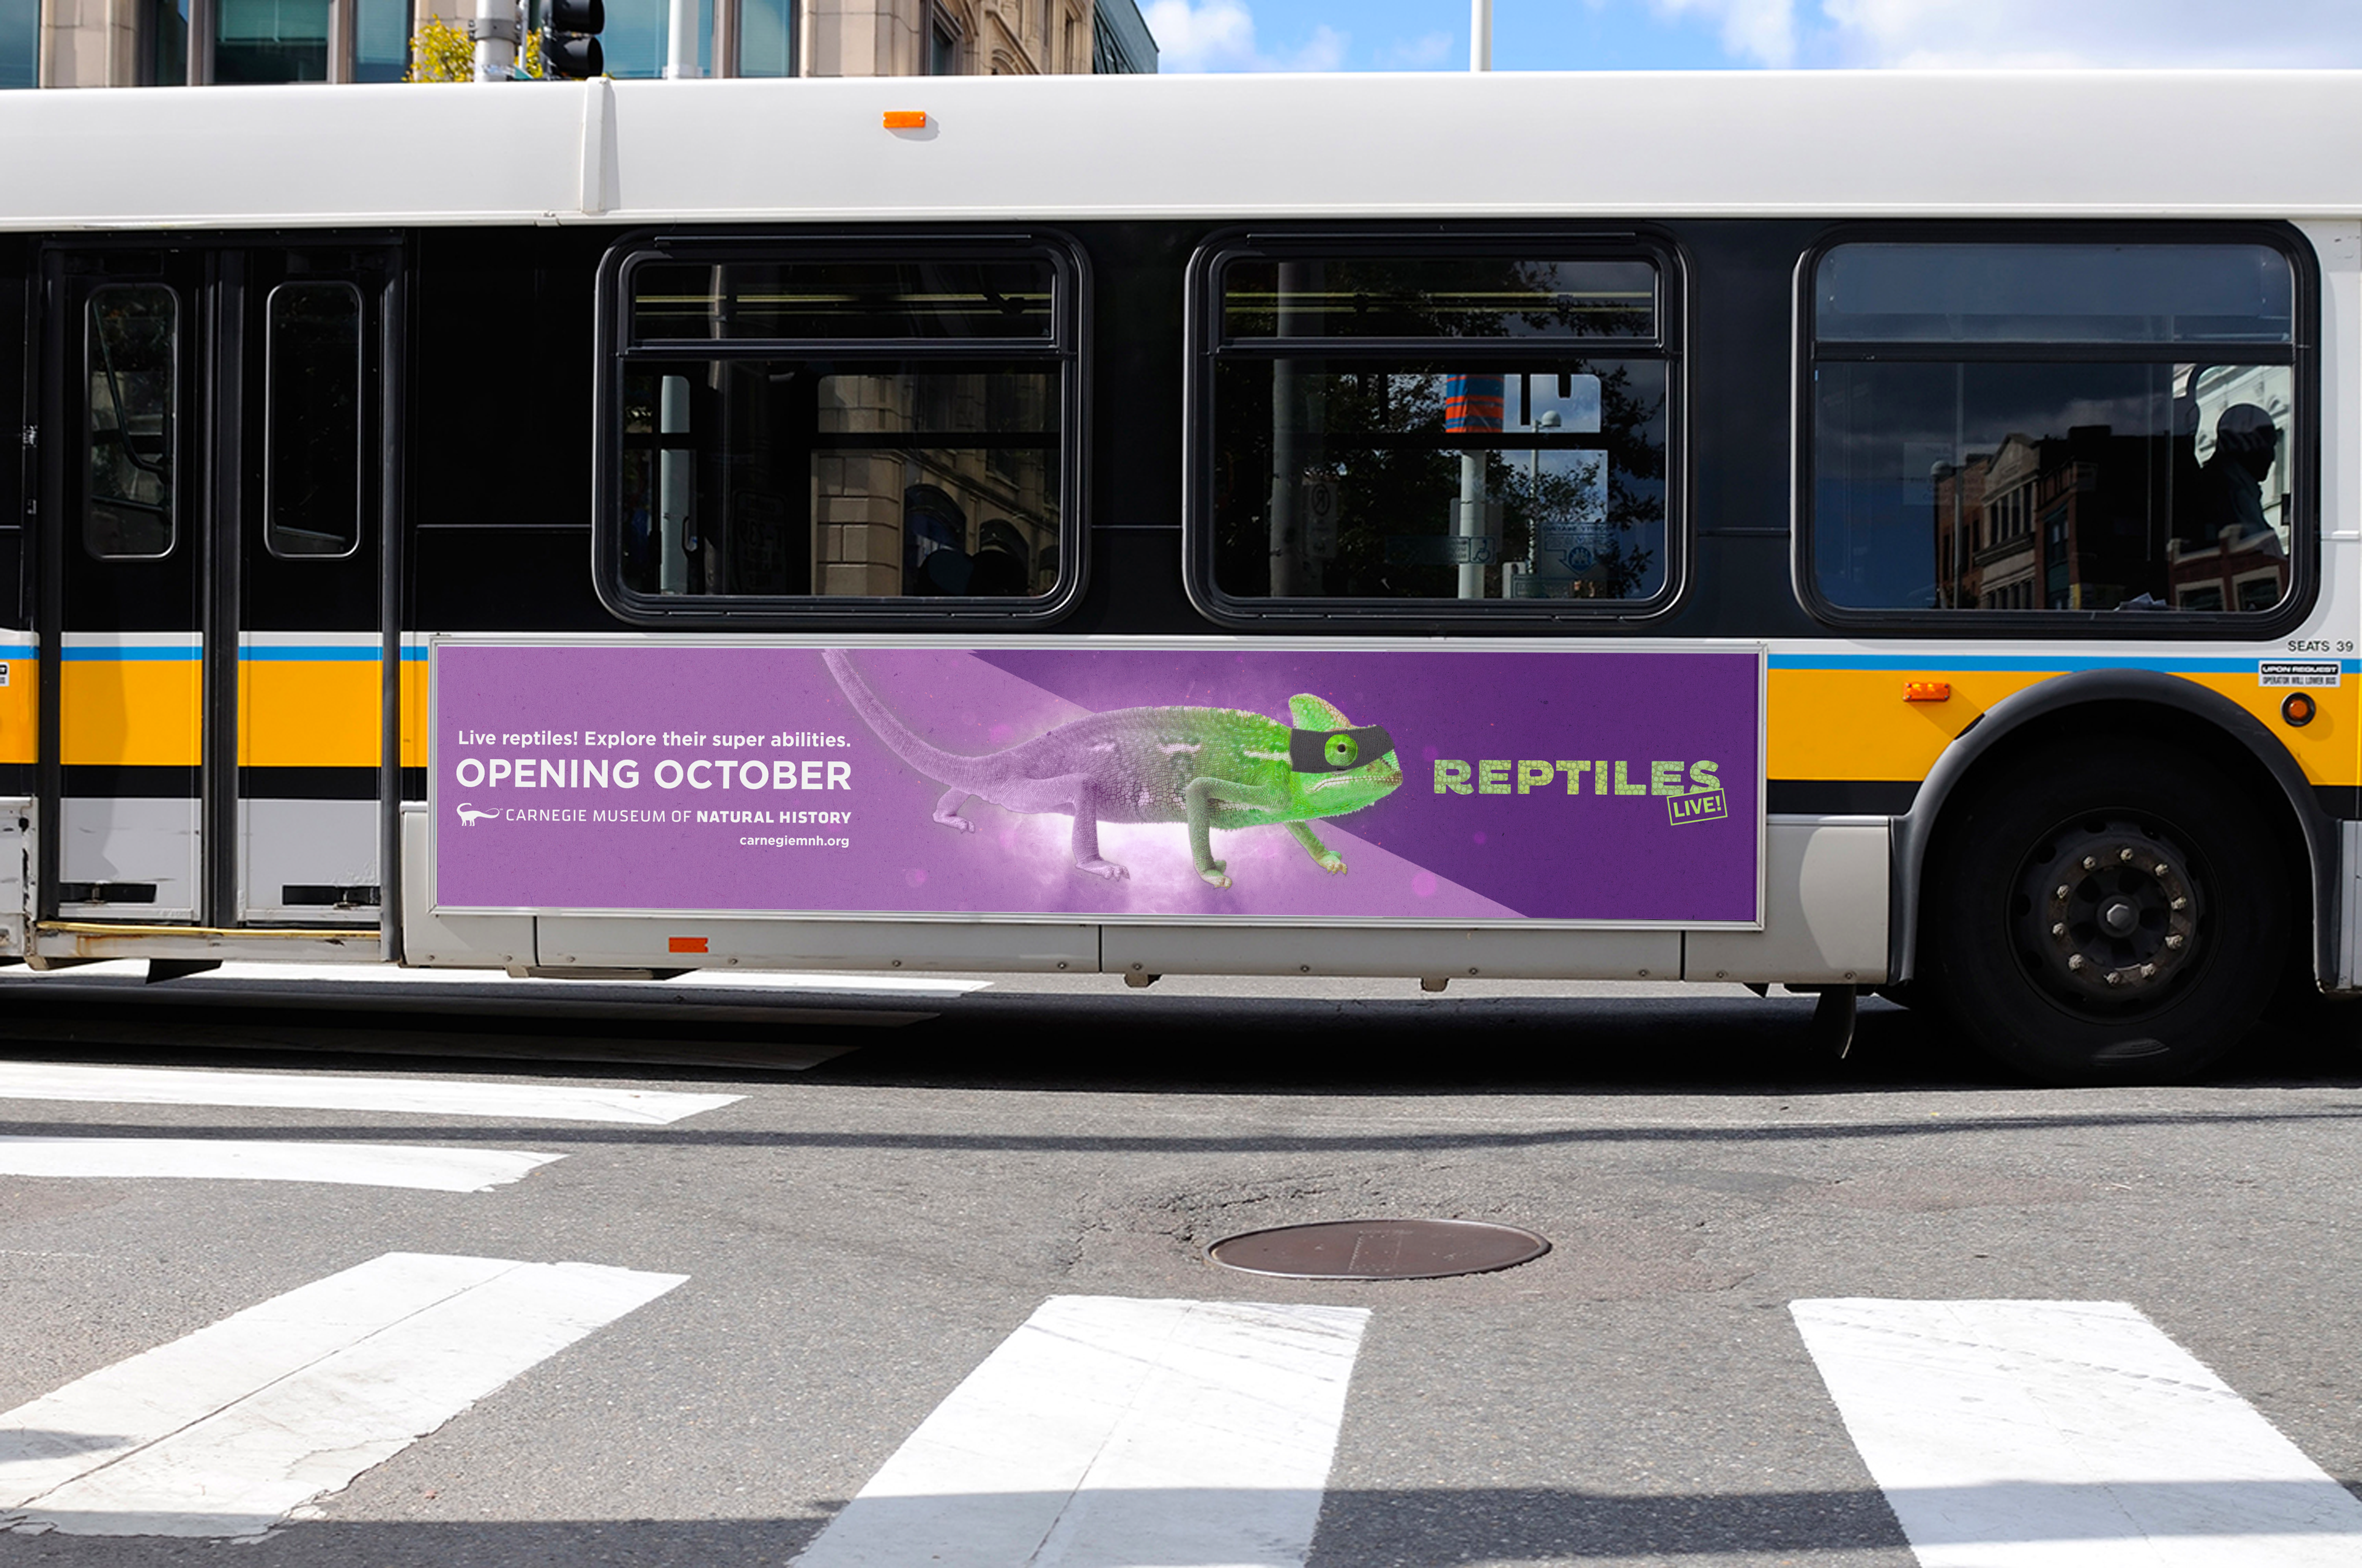 Reptile bus ad